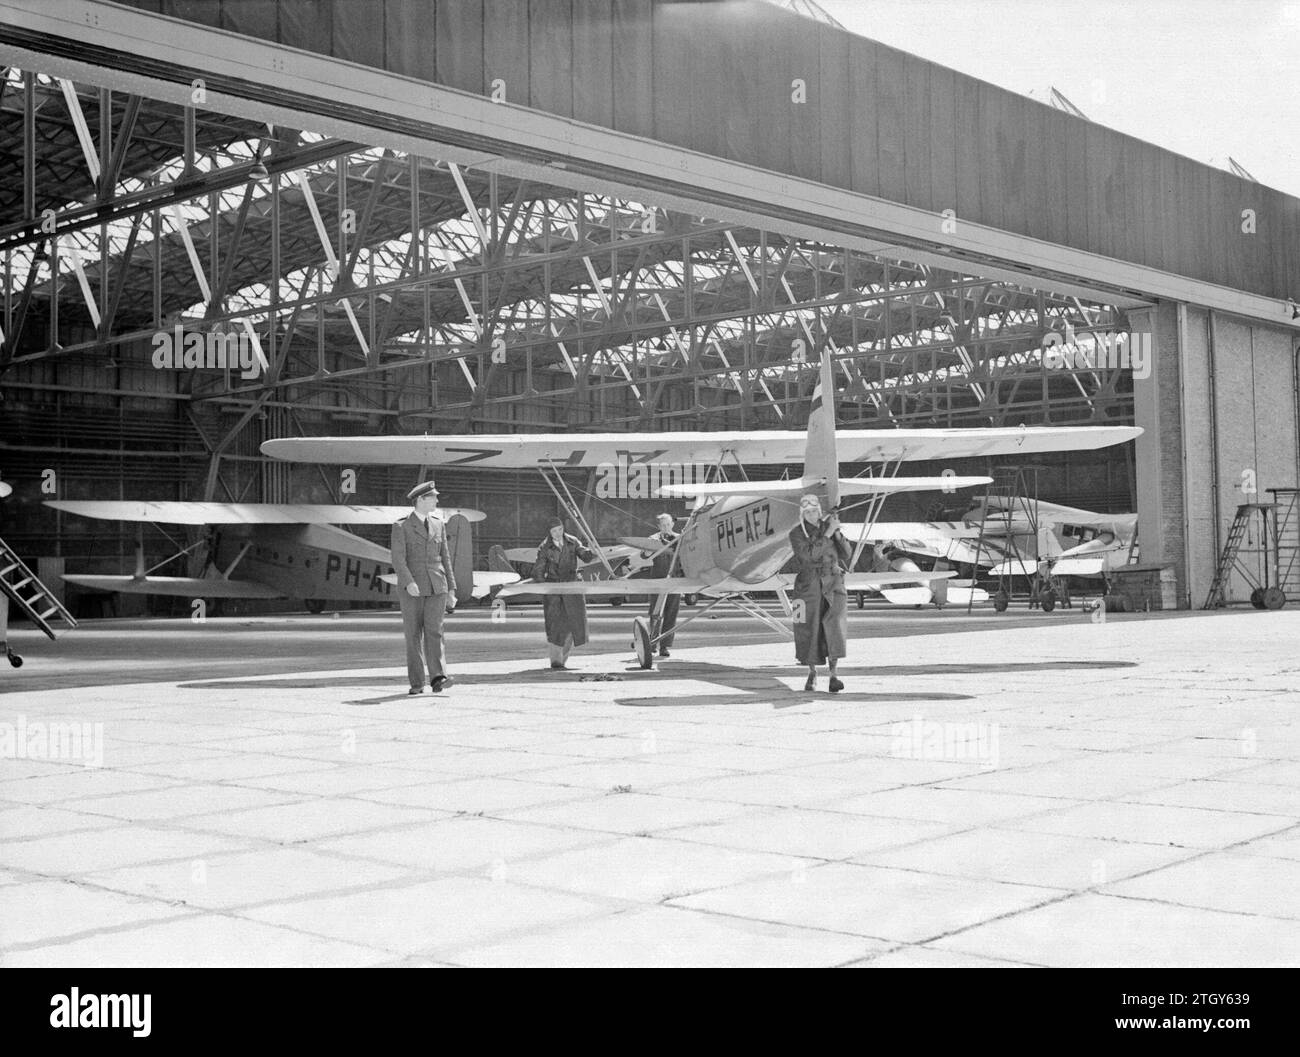 Die Pander EF 85 Doppeldeckerregistrierung PH-AFZ, Ausbildungsflugzeug der National Aviation School in Amsterdam Schiphol, wird von zukünftigen Piloten aus dem Hangar gedrängt. CA. Februar 1931 Stockfoto